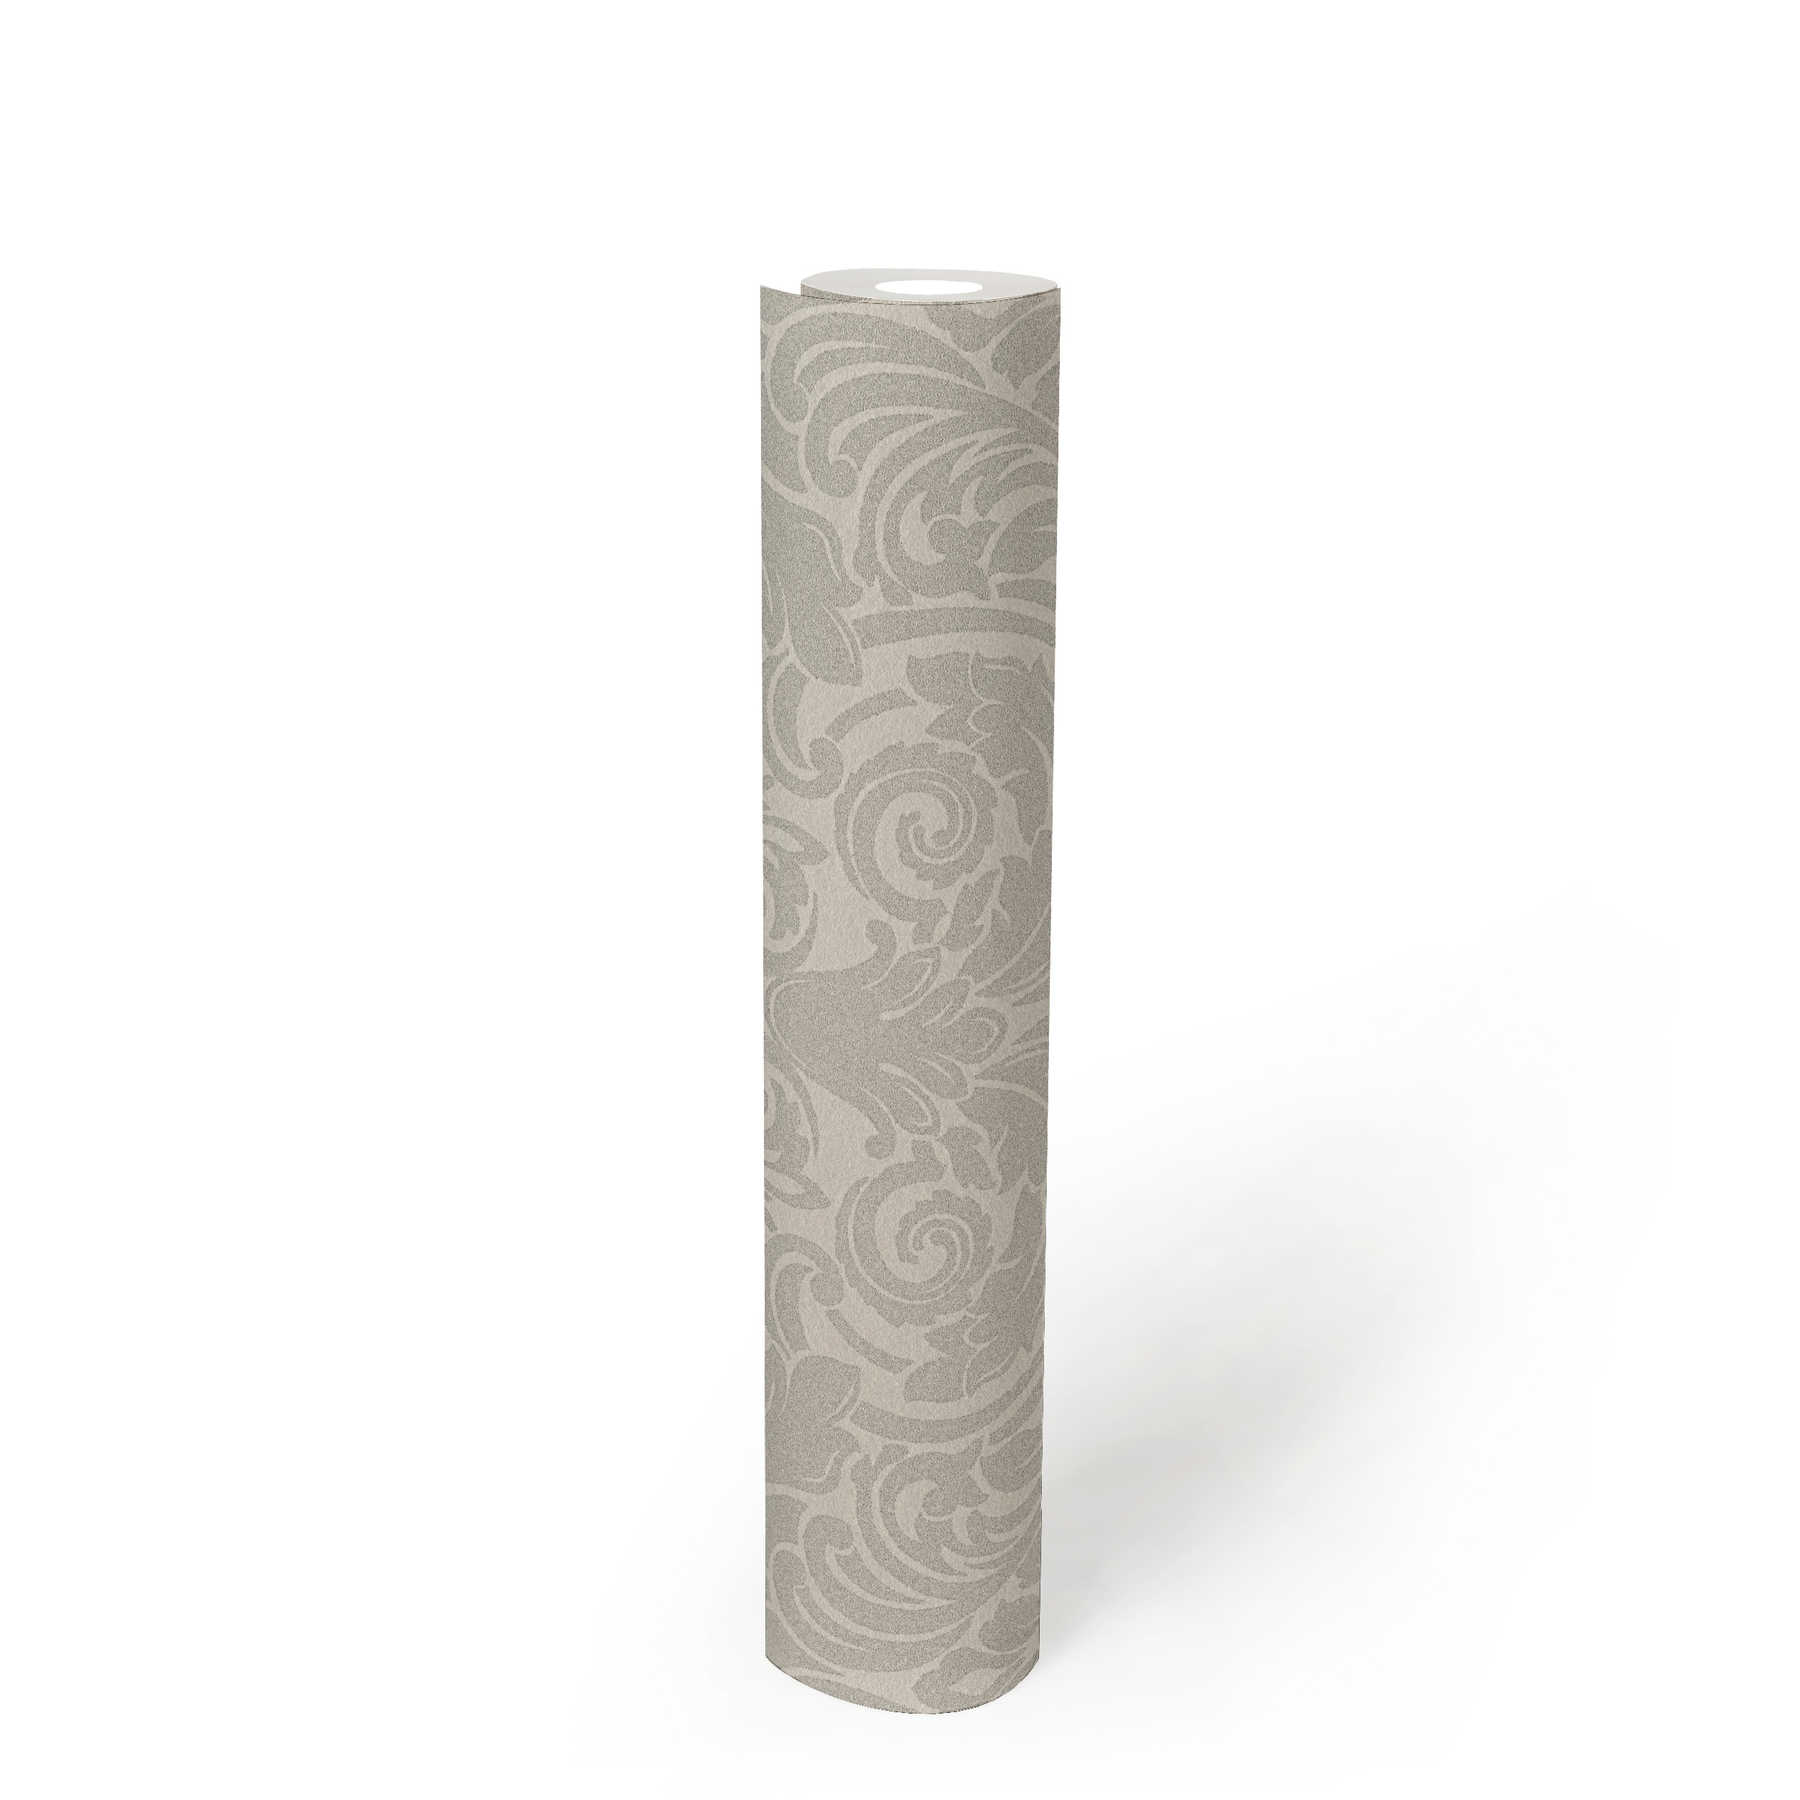             Ornamenttapete mit Metallic-Effekt und floralem Design – Silber, Creme
        